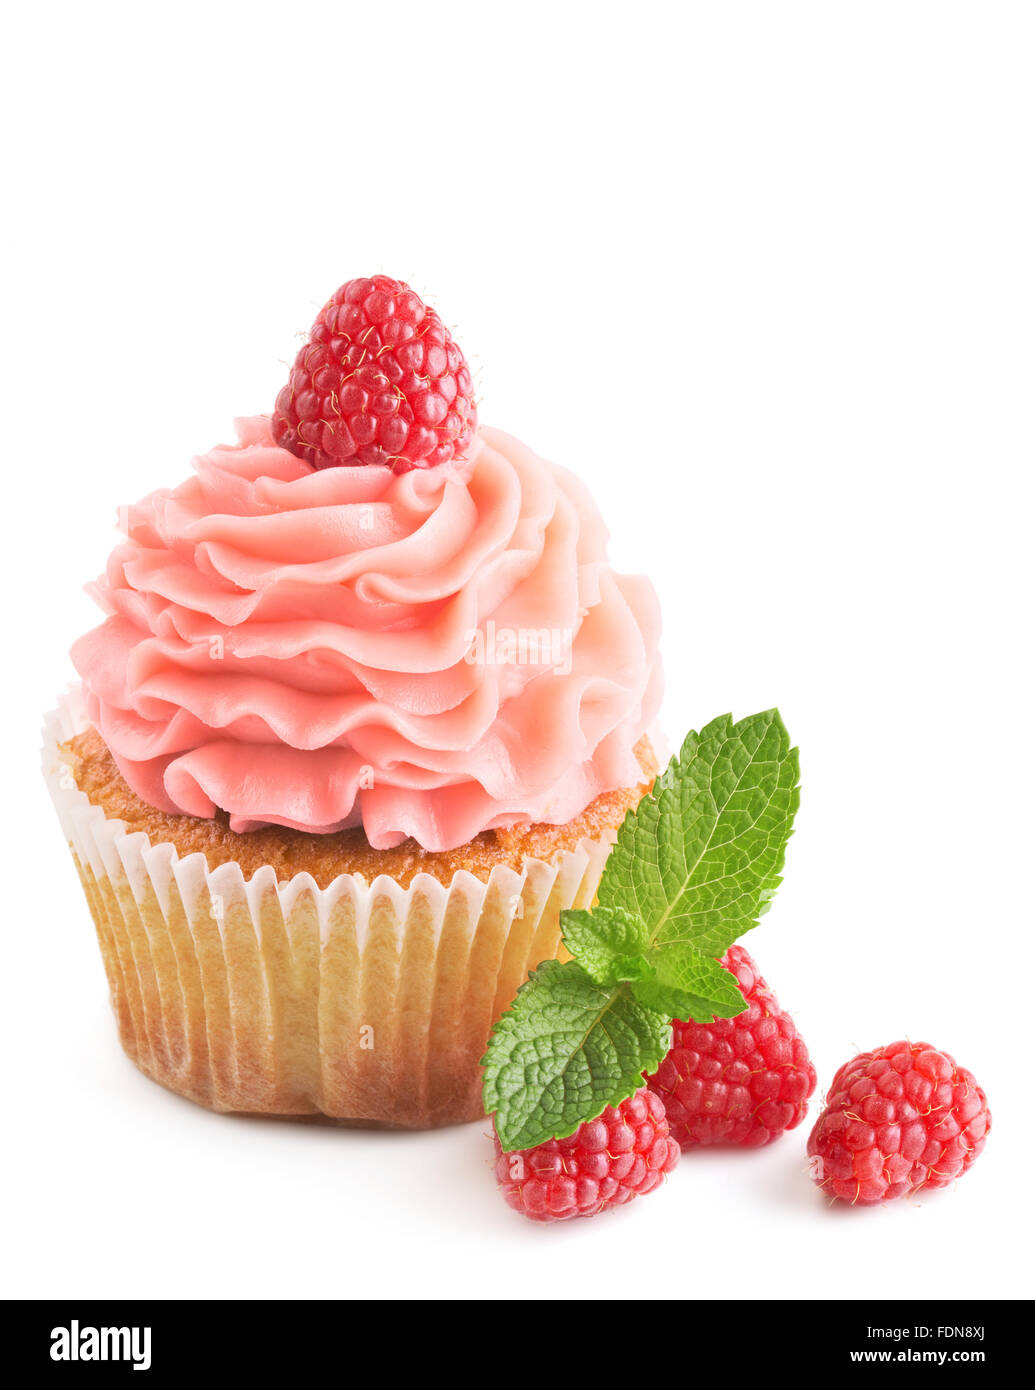 Raspberry cupcake con bayas frescas aislado en blanco Foto de stock